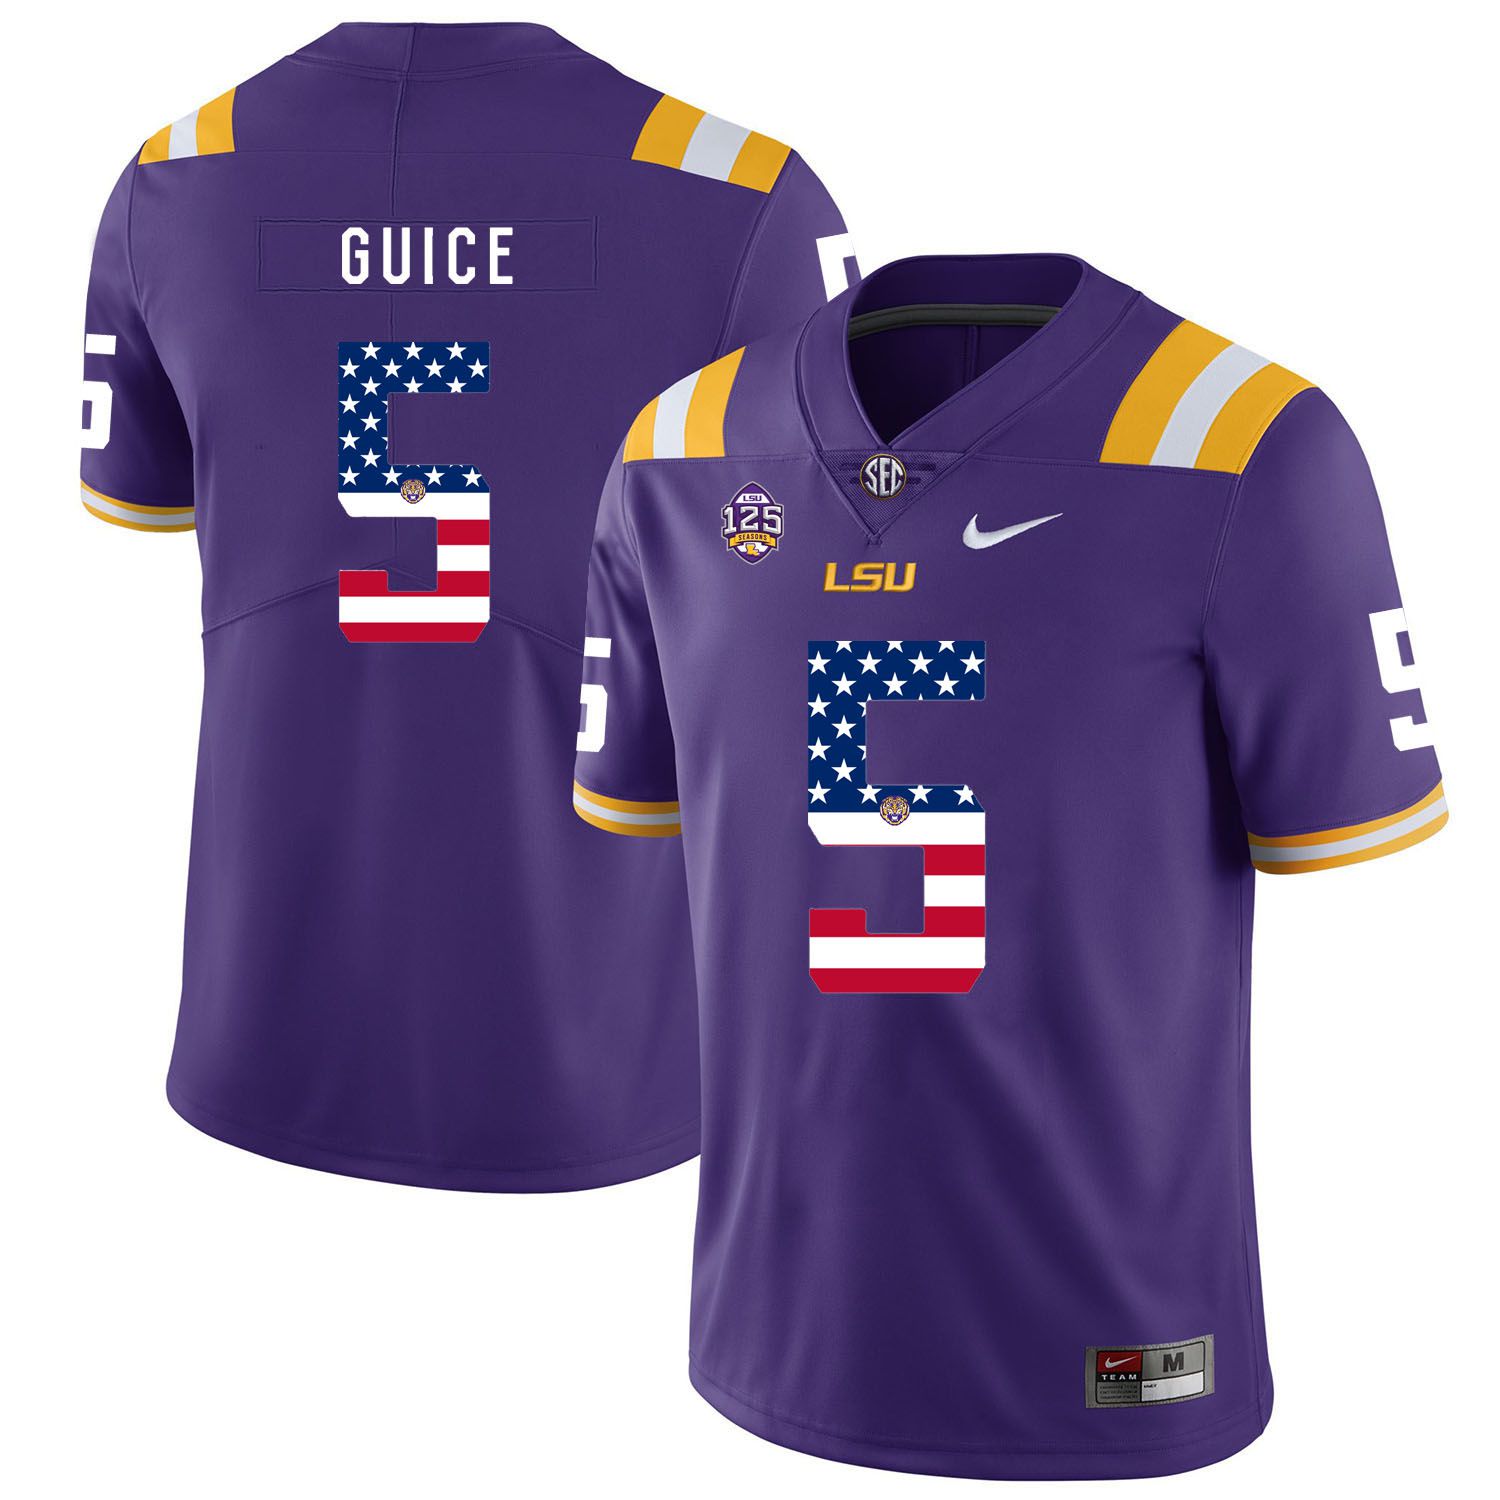 Men LSU Tigers #5 Guice Purple Flag Customized NCAA Jerseys->customized ncaa jersey->Custom Jersey